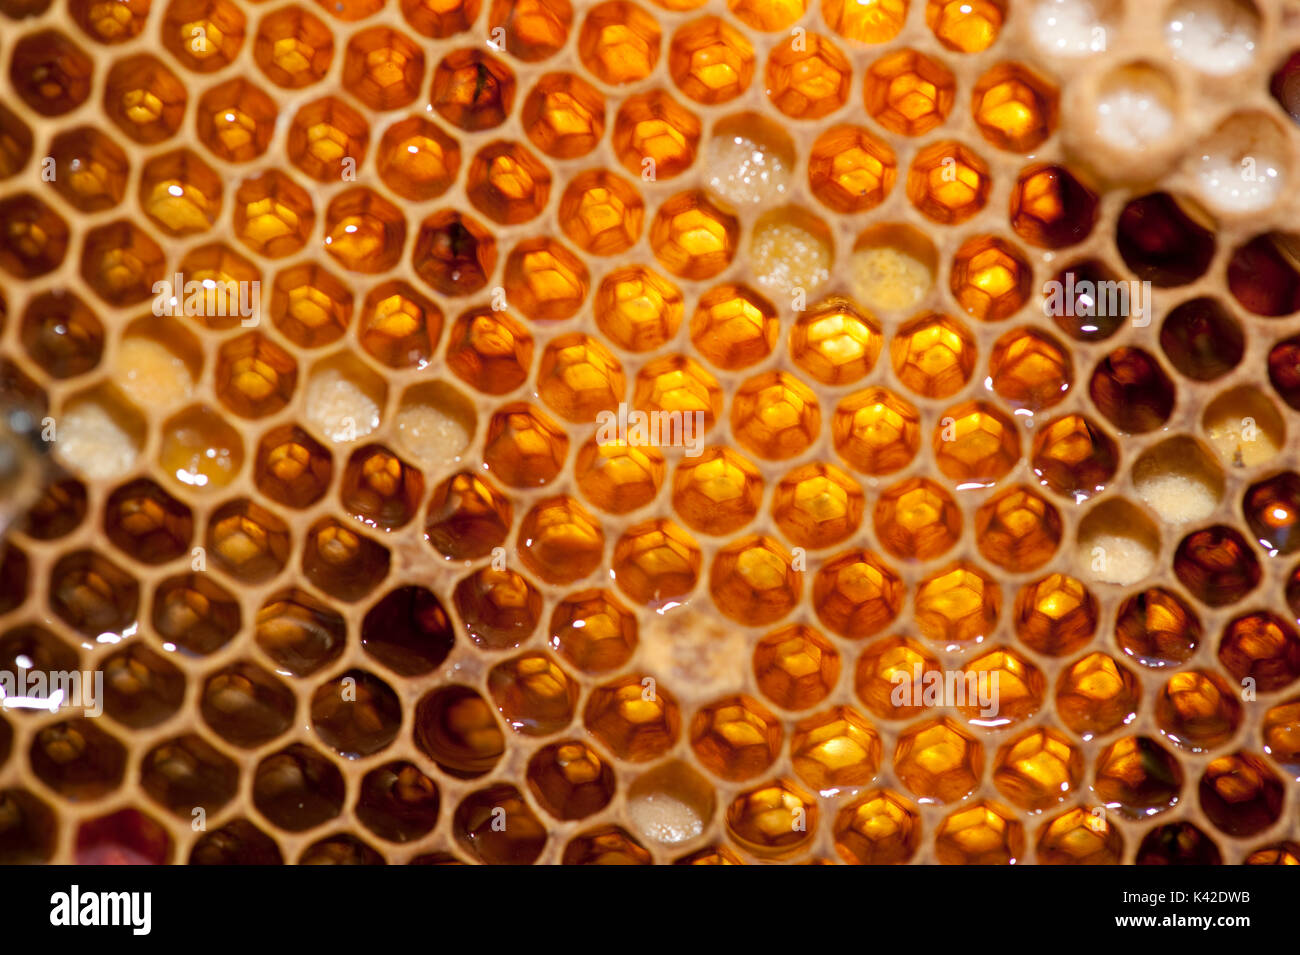 Cellules Honecomb contenant du miel dans la ruche, le miel, l'abeille Apis mellifera, Kent UK Banque D'Images